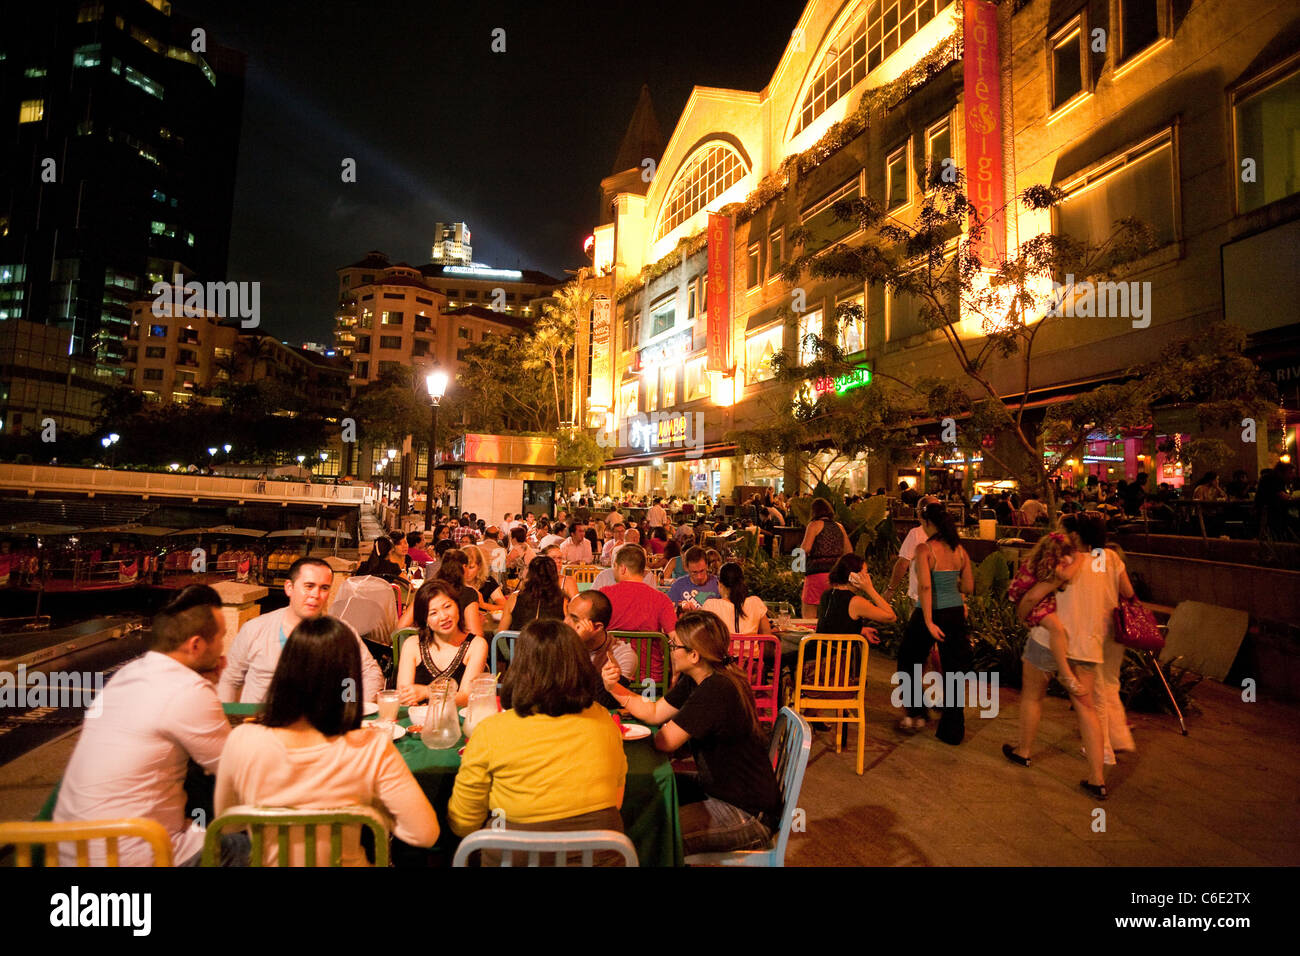 Menschen Essen im Restaurant im Freien, Riverside Point, Clarke Quay Singapur Asien Stockfoto